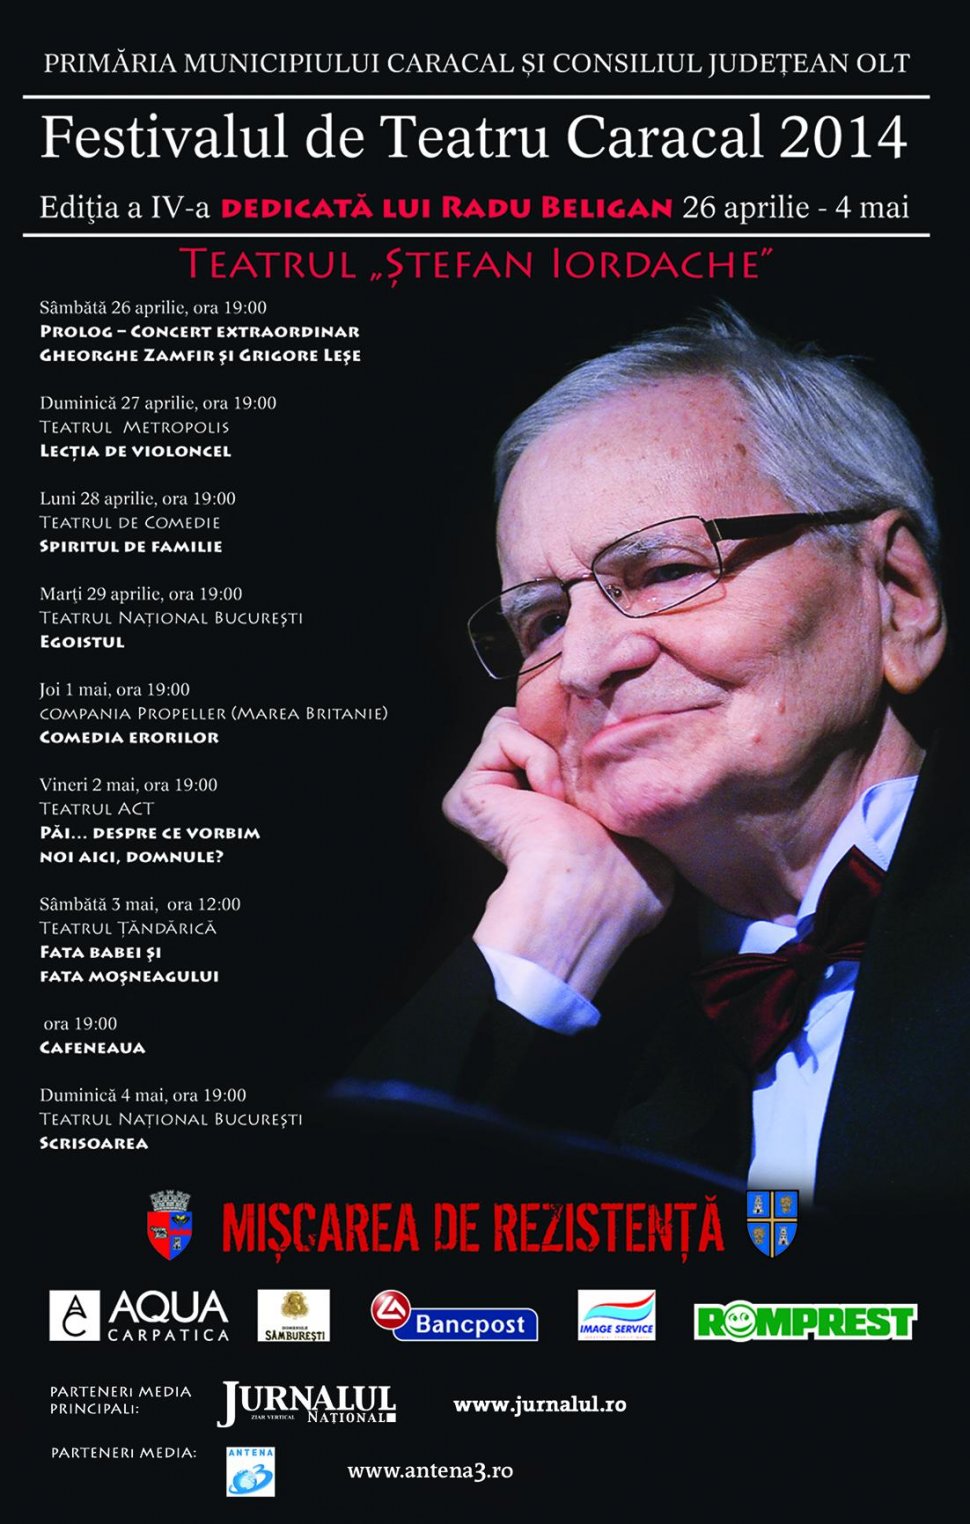 Reverenţă făcută maestrului Radu Beligan. Ediţia 2014 a Festivalului de Teatru Caracal, 26 aprilie – 4 mai